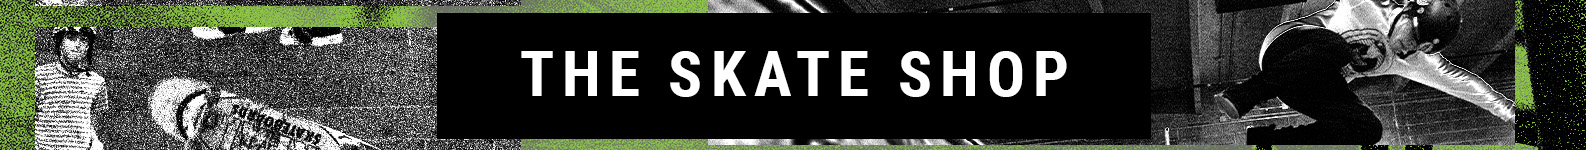 Skate brand header image